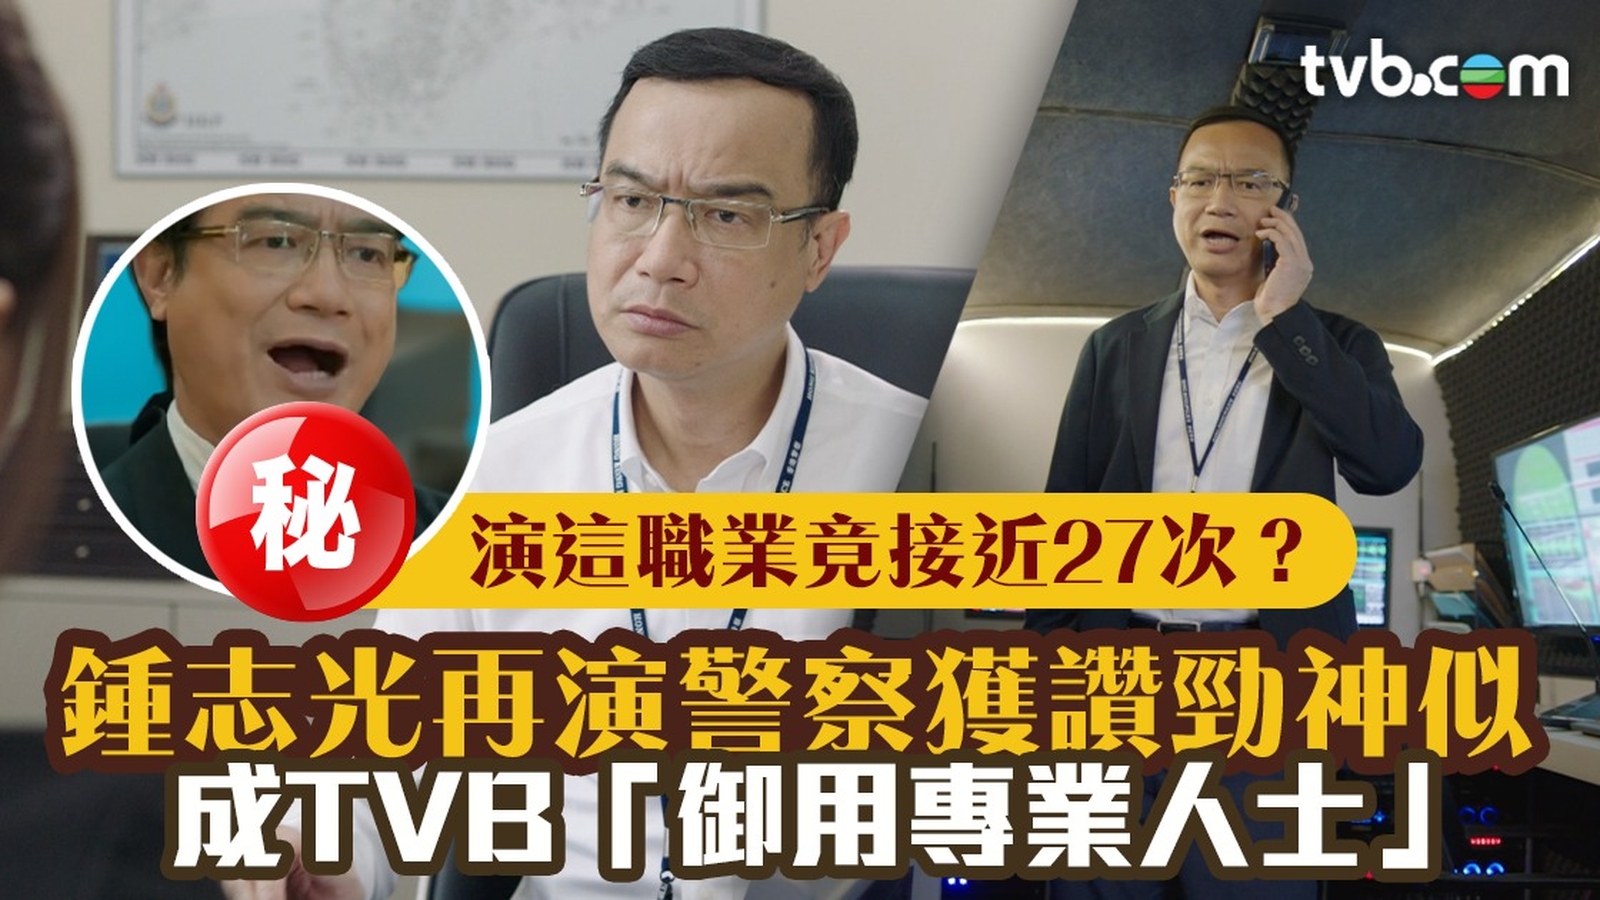 鍾志光再演警察獲讚勁神似 成TVB「御用專業人士」演這職業竟接近27次 ？